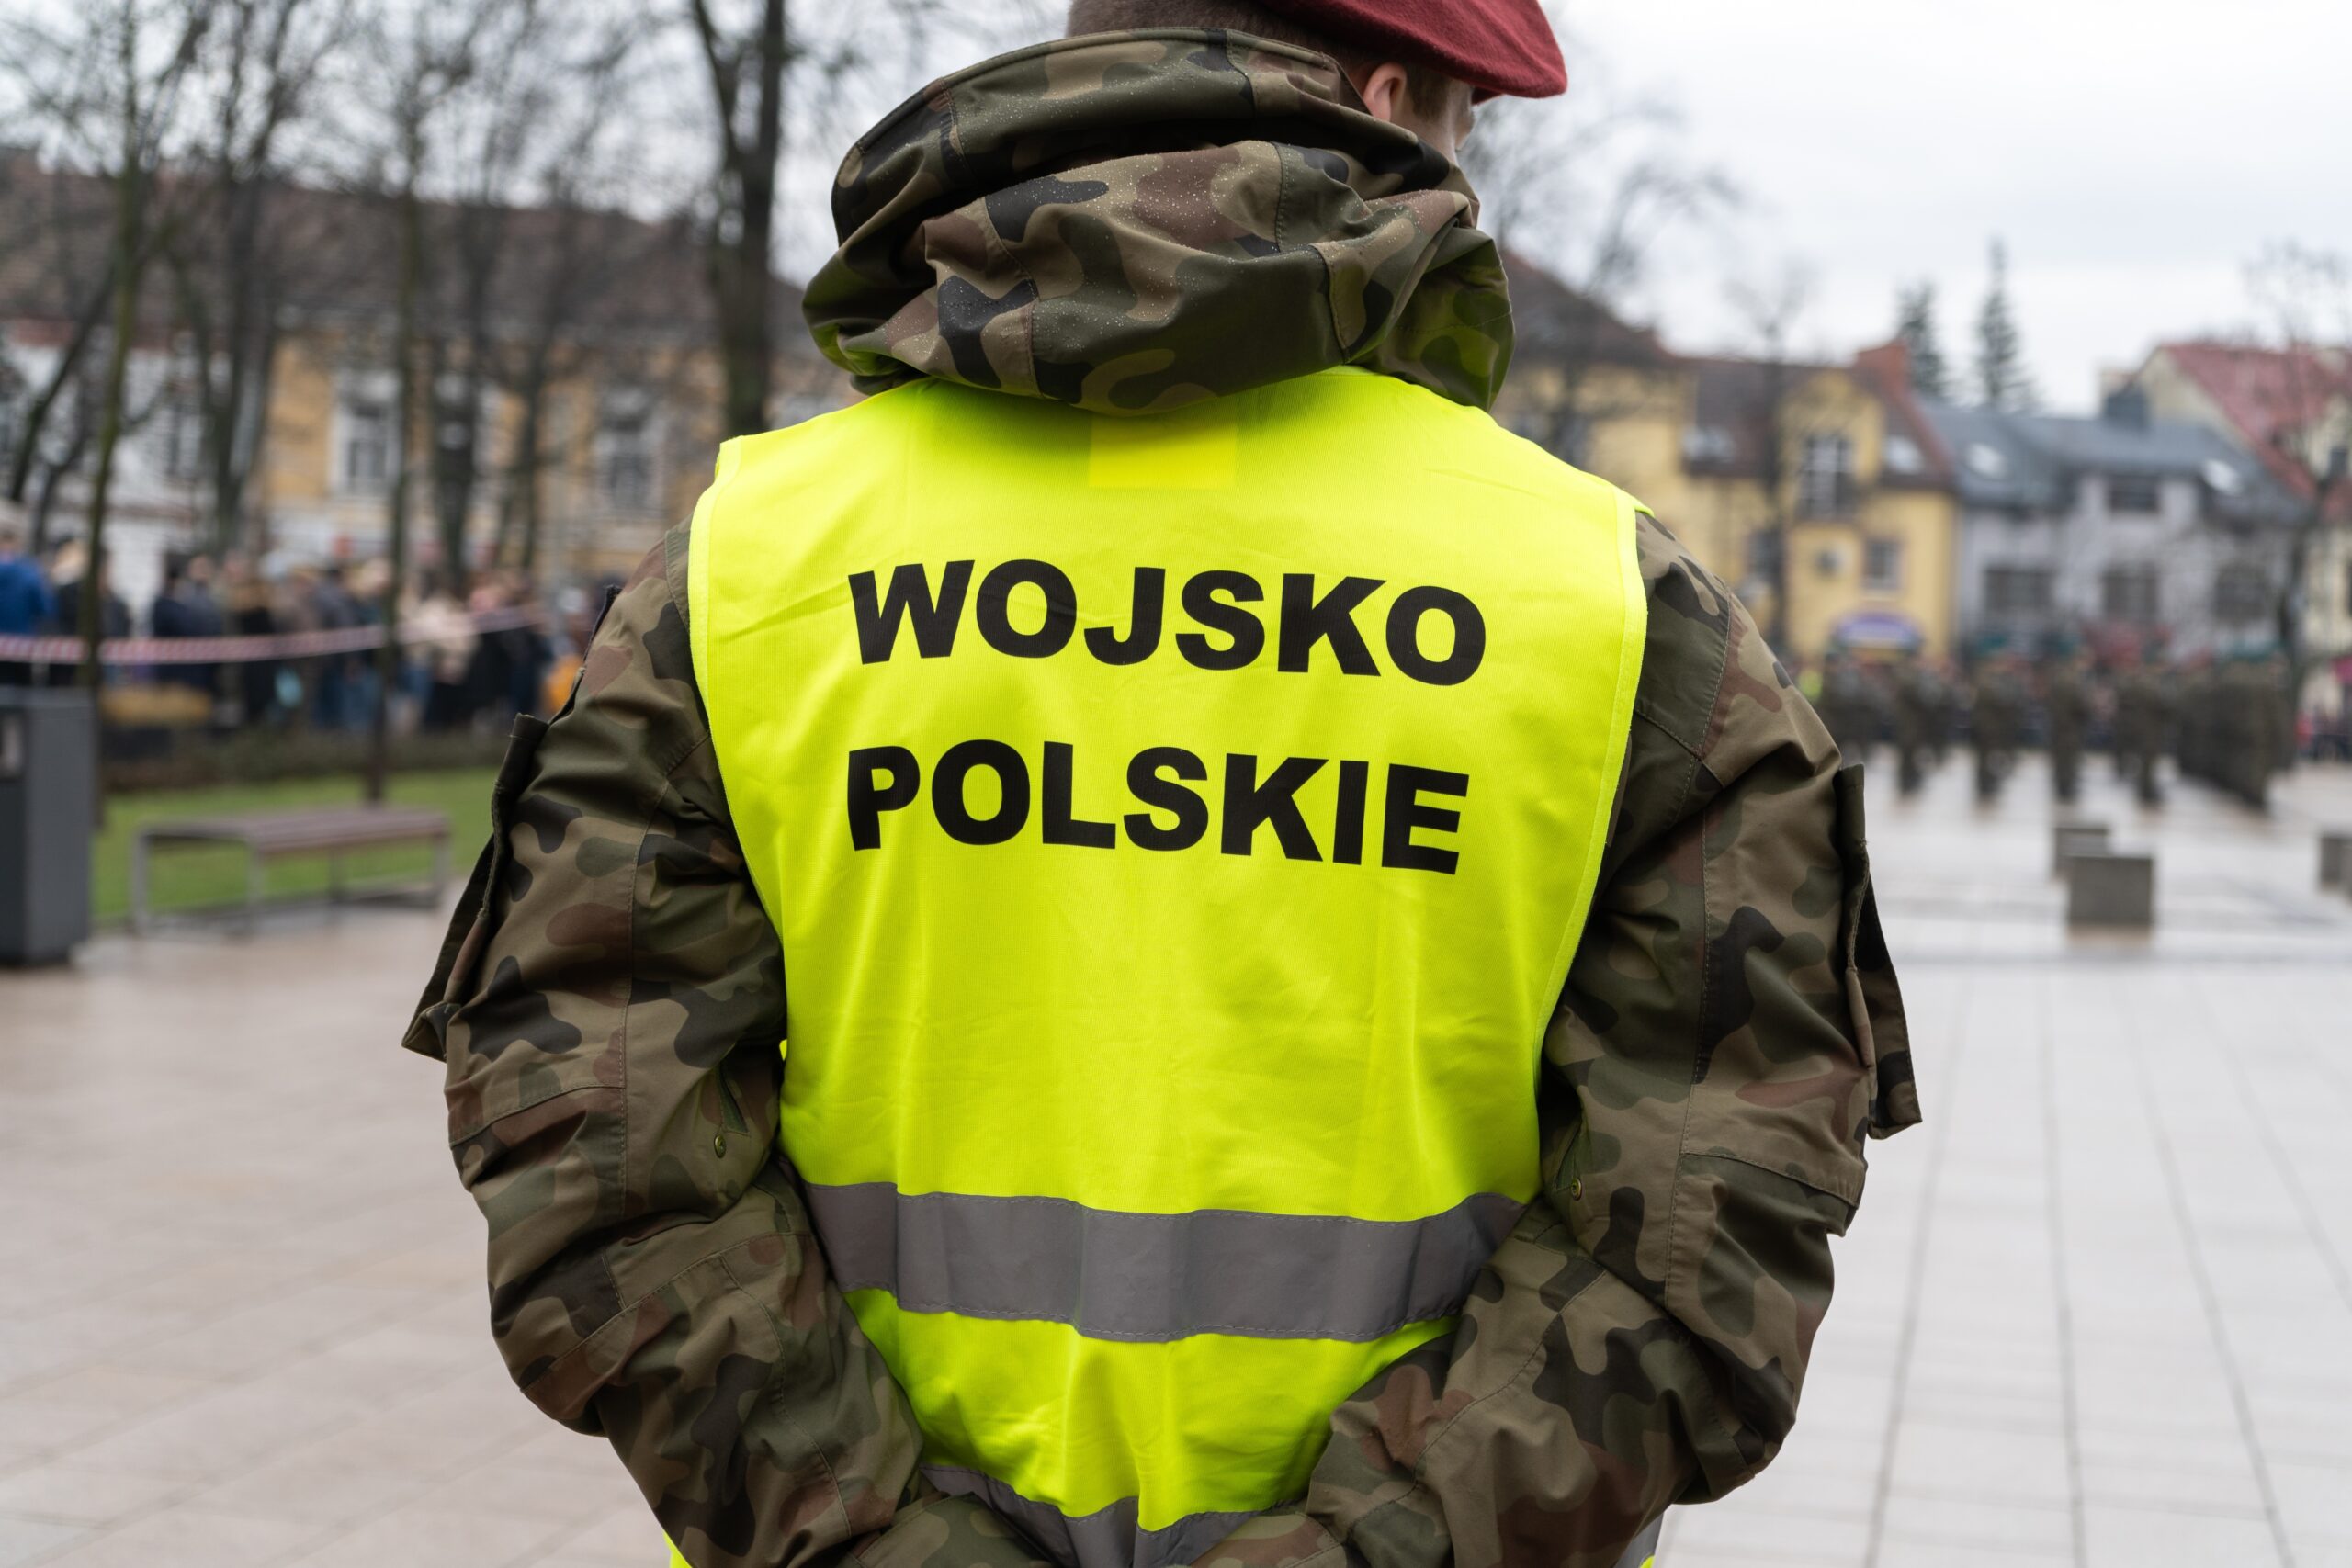 Żołnierz ubrany w kamuflaż i żółtą kamizelkę odblaskową z napisem "WOJSKO POLSKIE" stoi na placu miejskim.